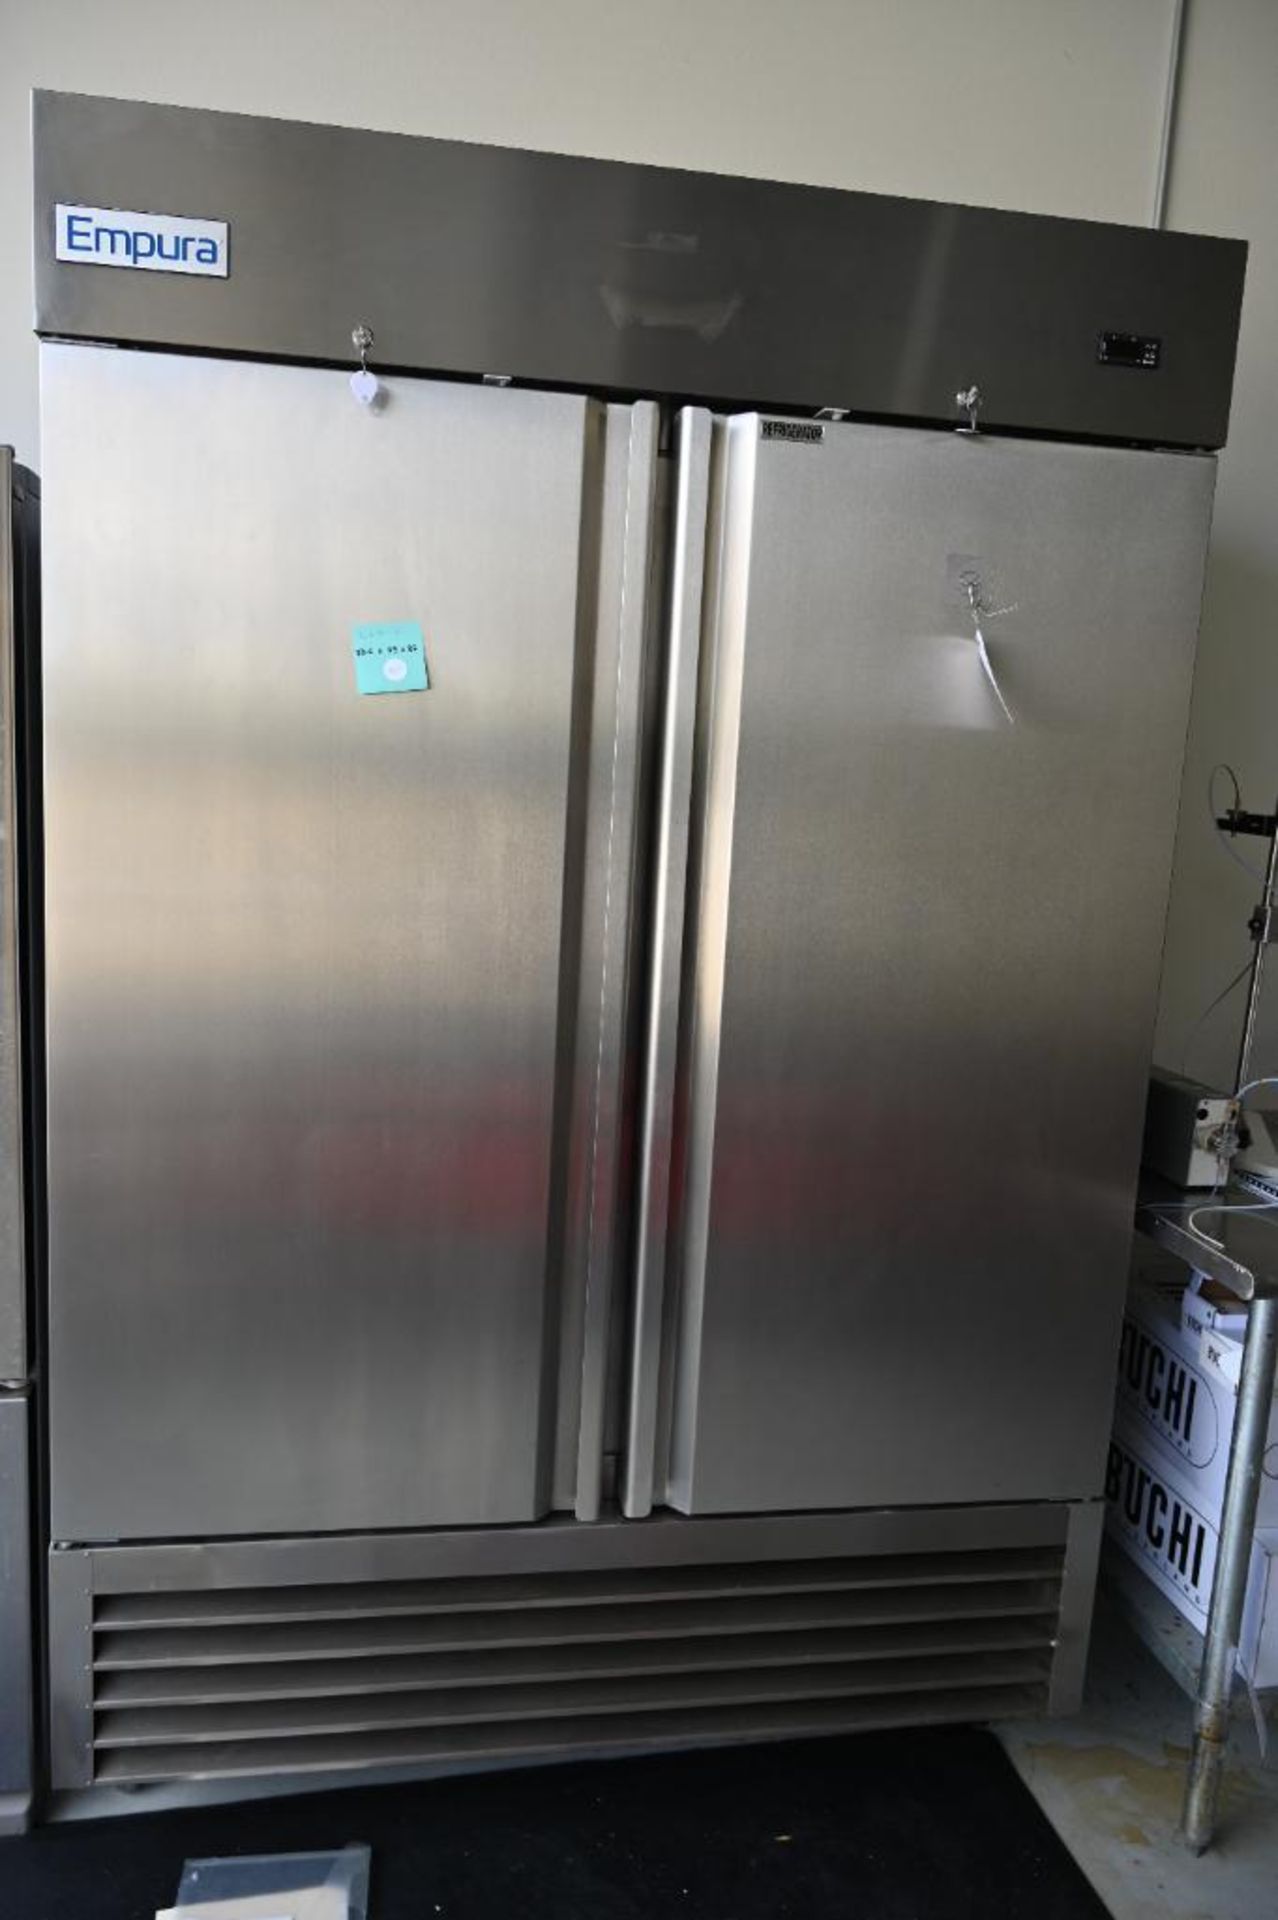 Empura model EKB54R Stainless Commercial Refrigerator - Image 2 of 14